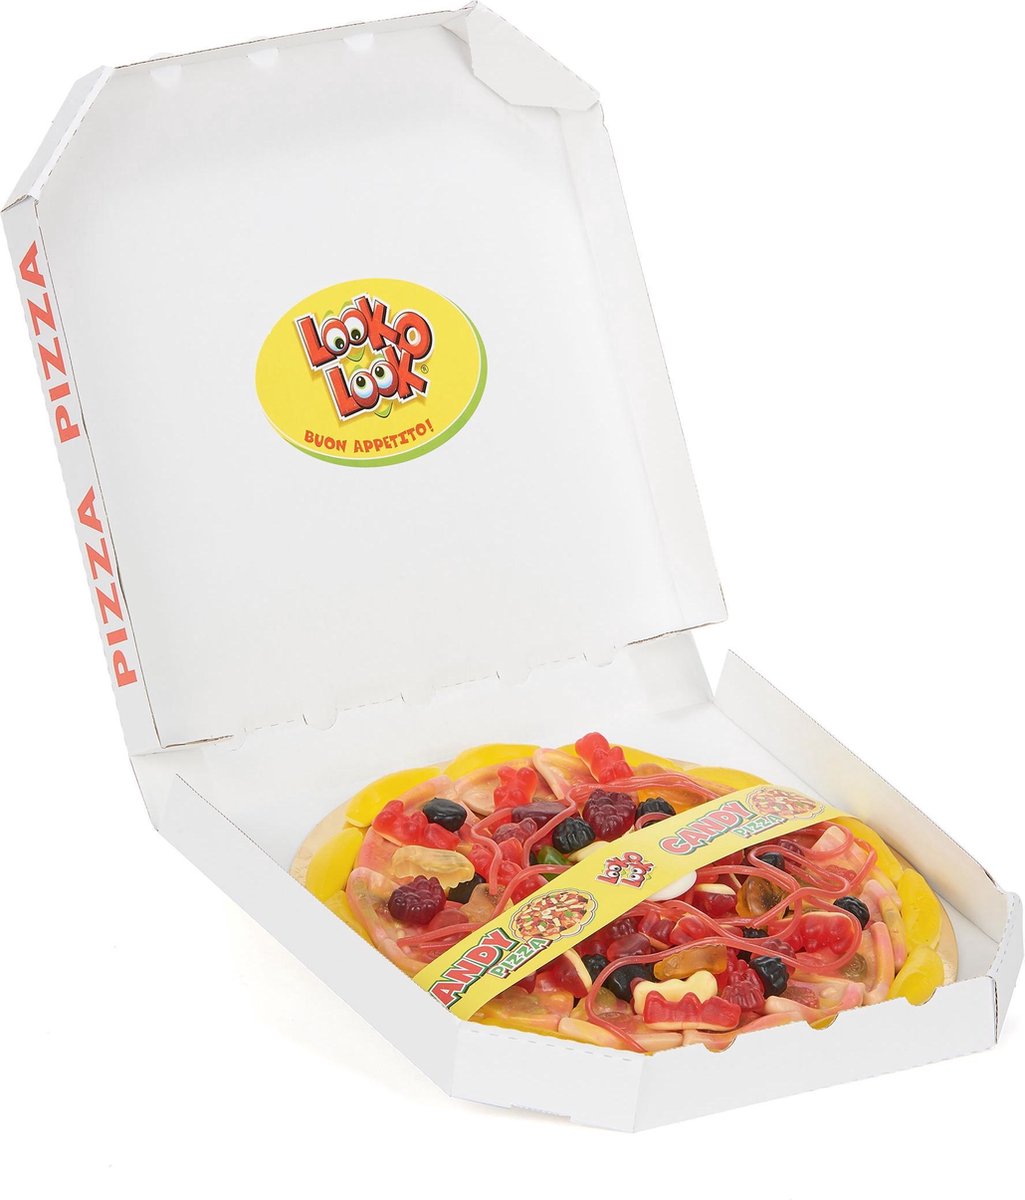 Sweets pizza Look o Look - Objet de décoration de fête - Taille unique" |  bol.com